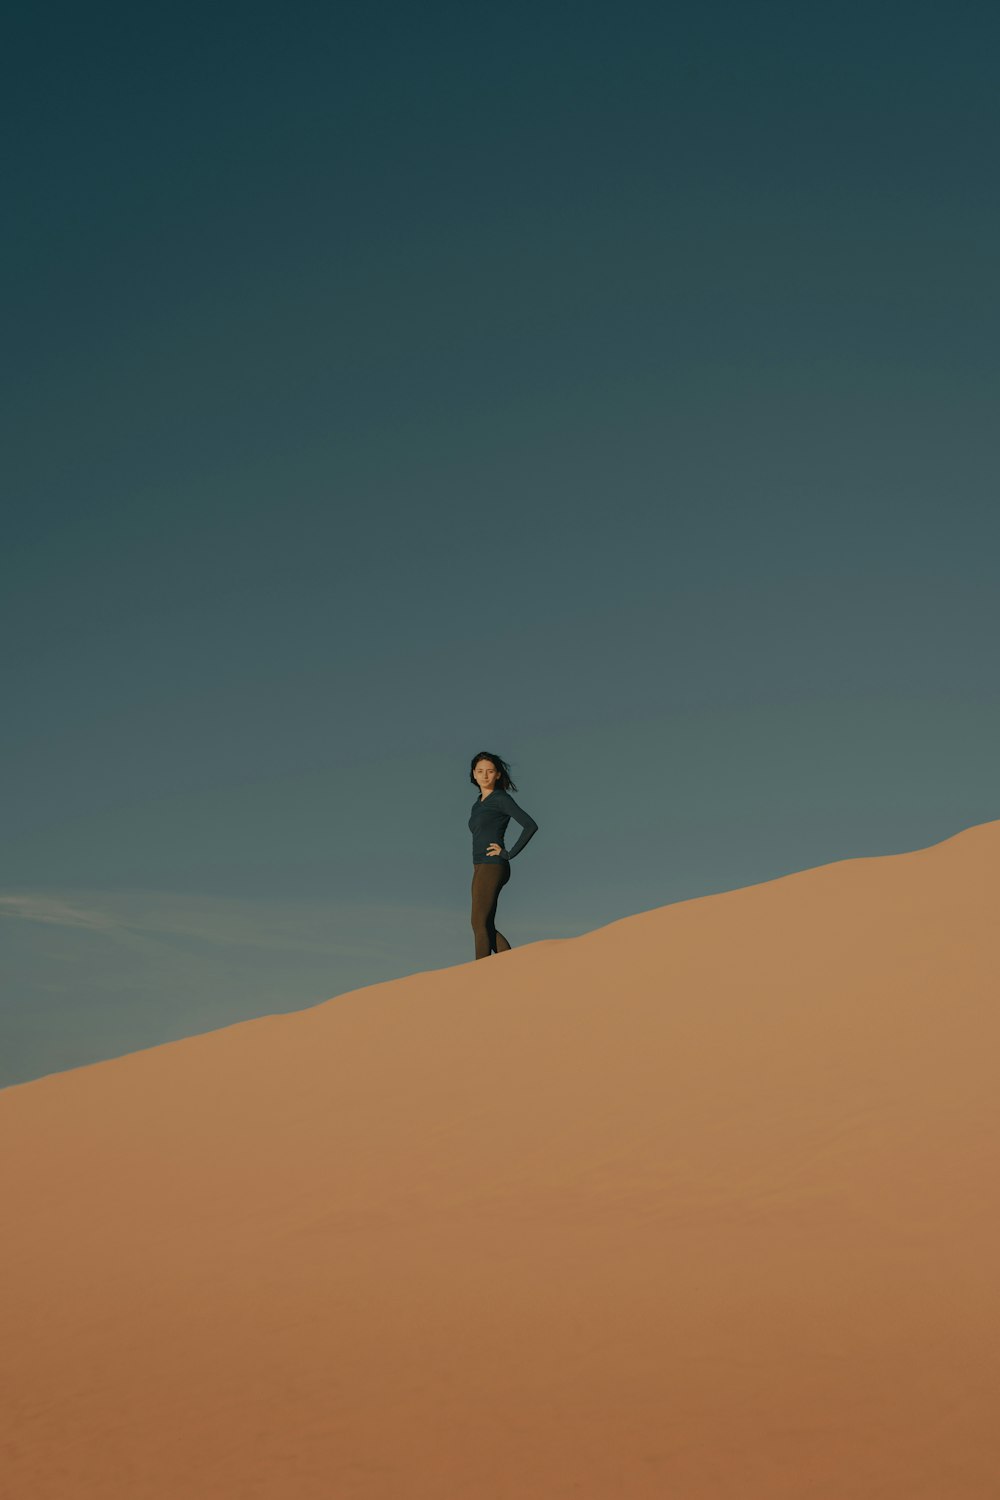 검은 셔츠와 검은 반바지를 입은 여자가 낮에 갈색 모래 위에 서 있다